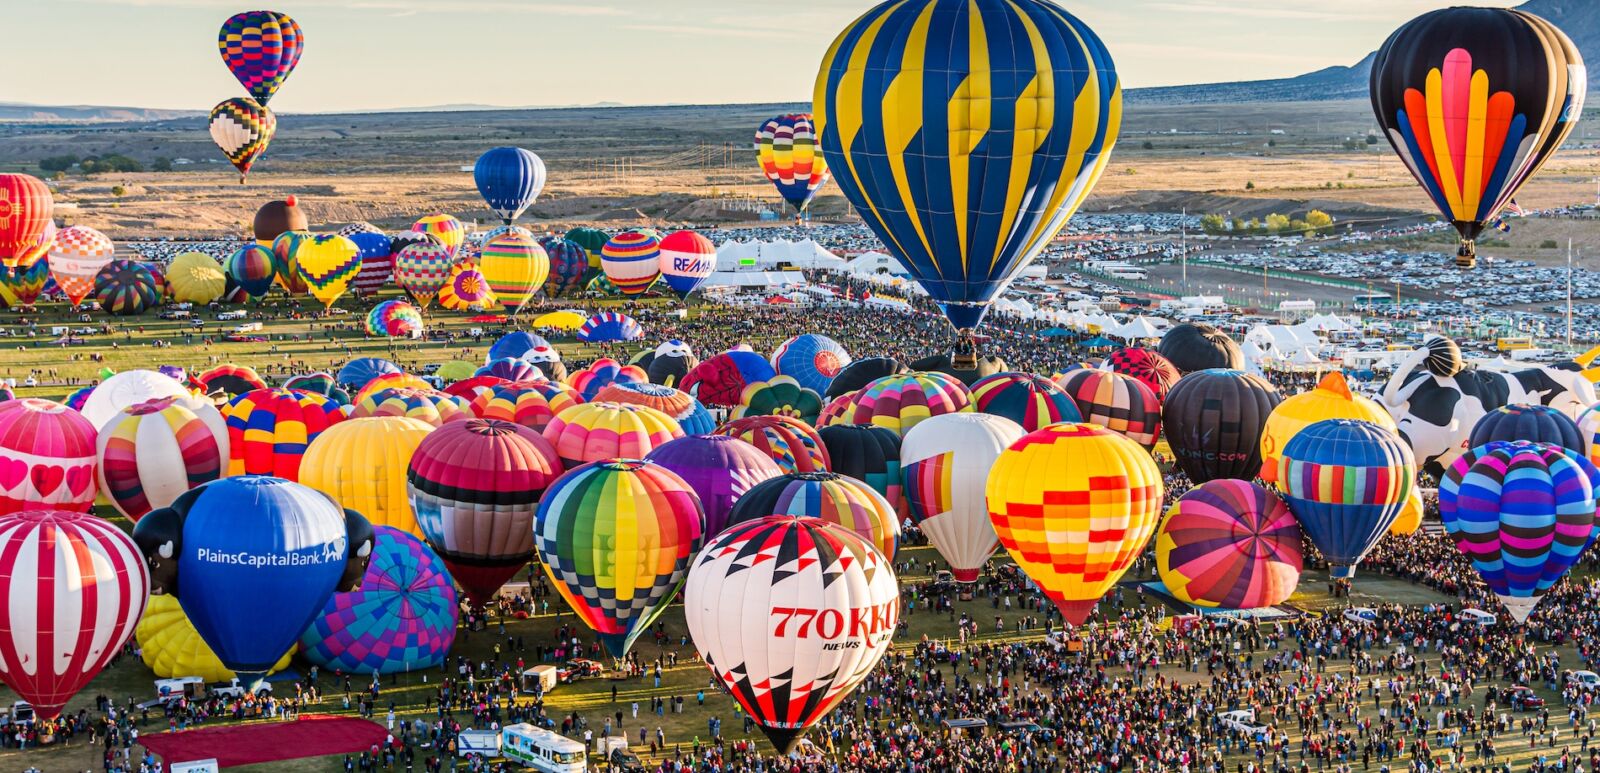 Albuquerque, New Mexico - USA - Oct 13, 2012: Balloon Flight at the Albuquerque International Balloon Fiesta. Photo via Shutterstock.